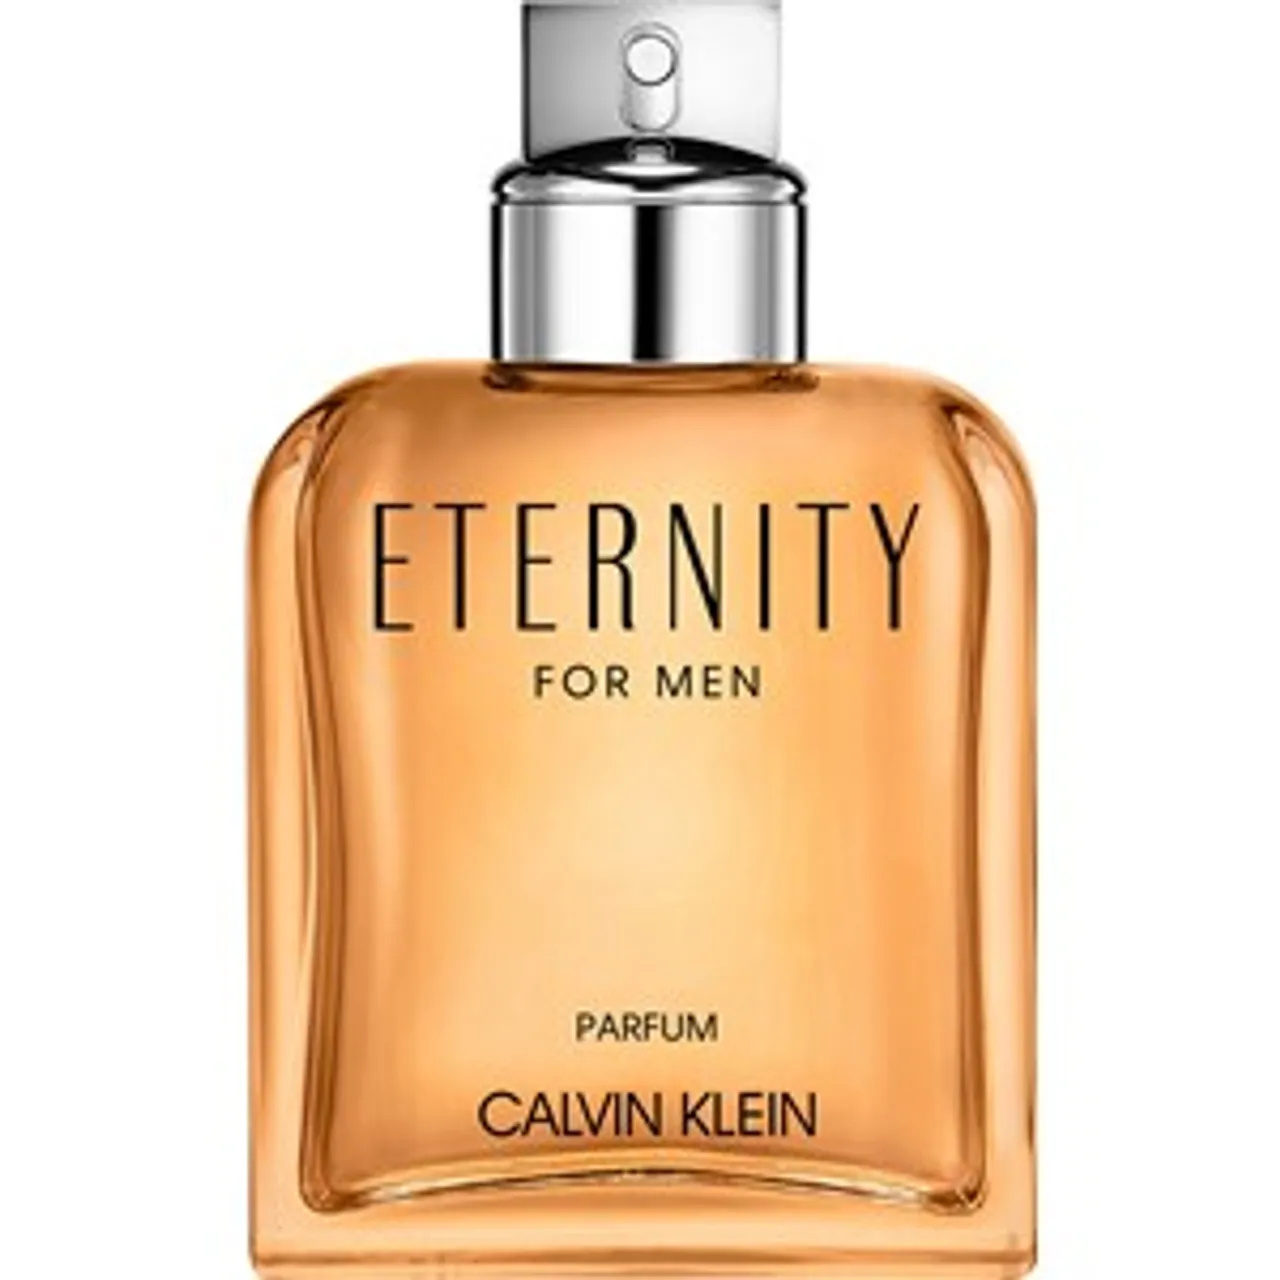 Calvin Klein Parfum Female 50 ml